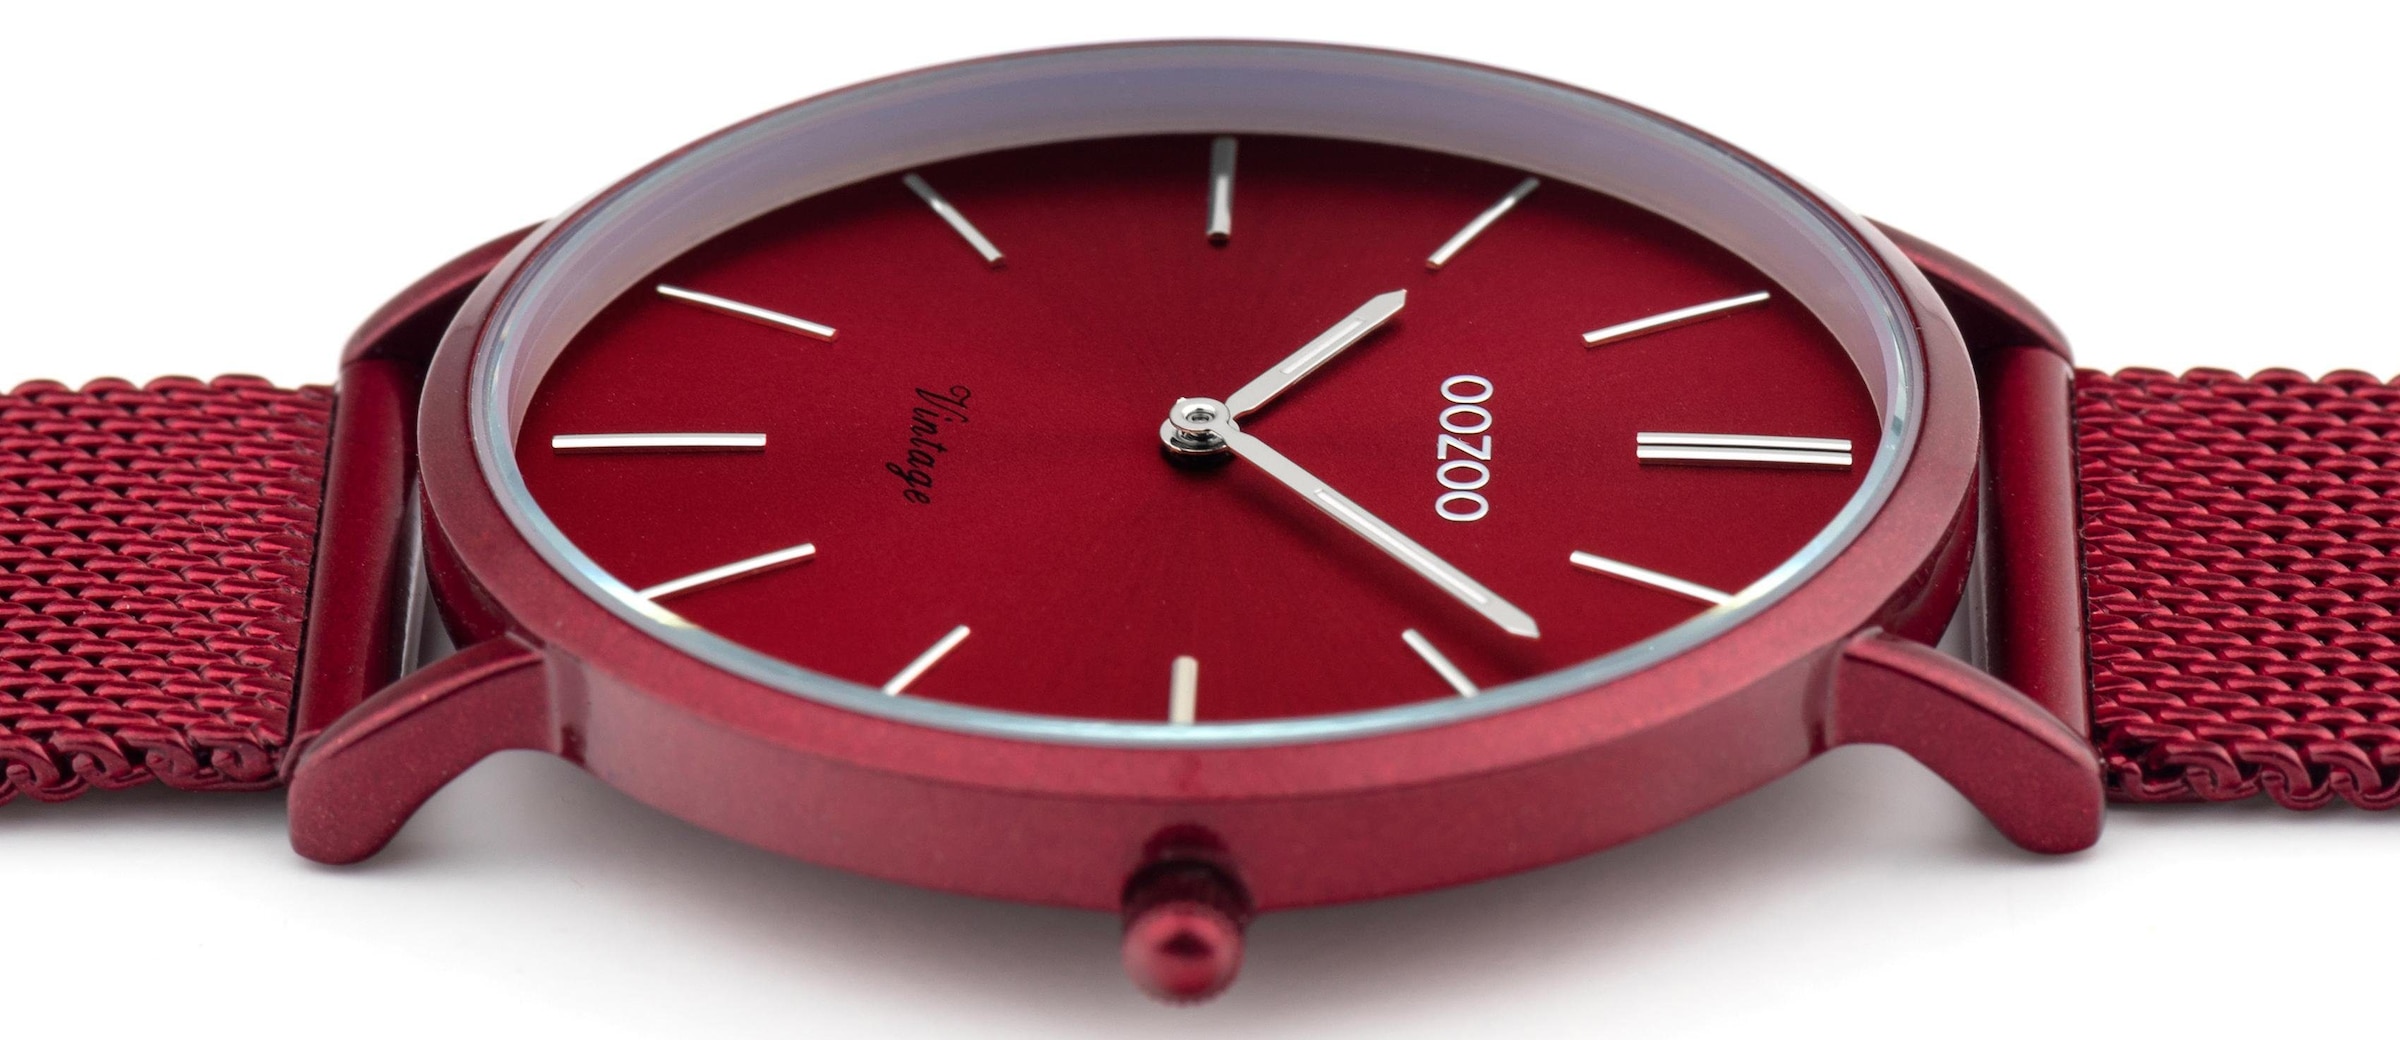 OOZOO Quarzuhr »C20001«, Armbanduhr, Damenuhr